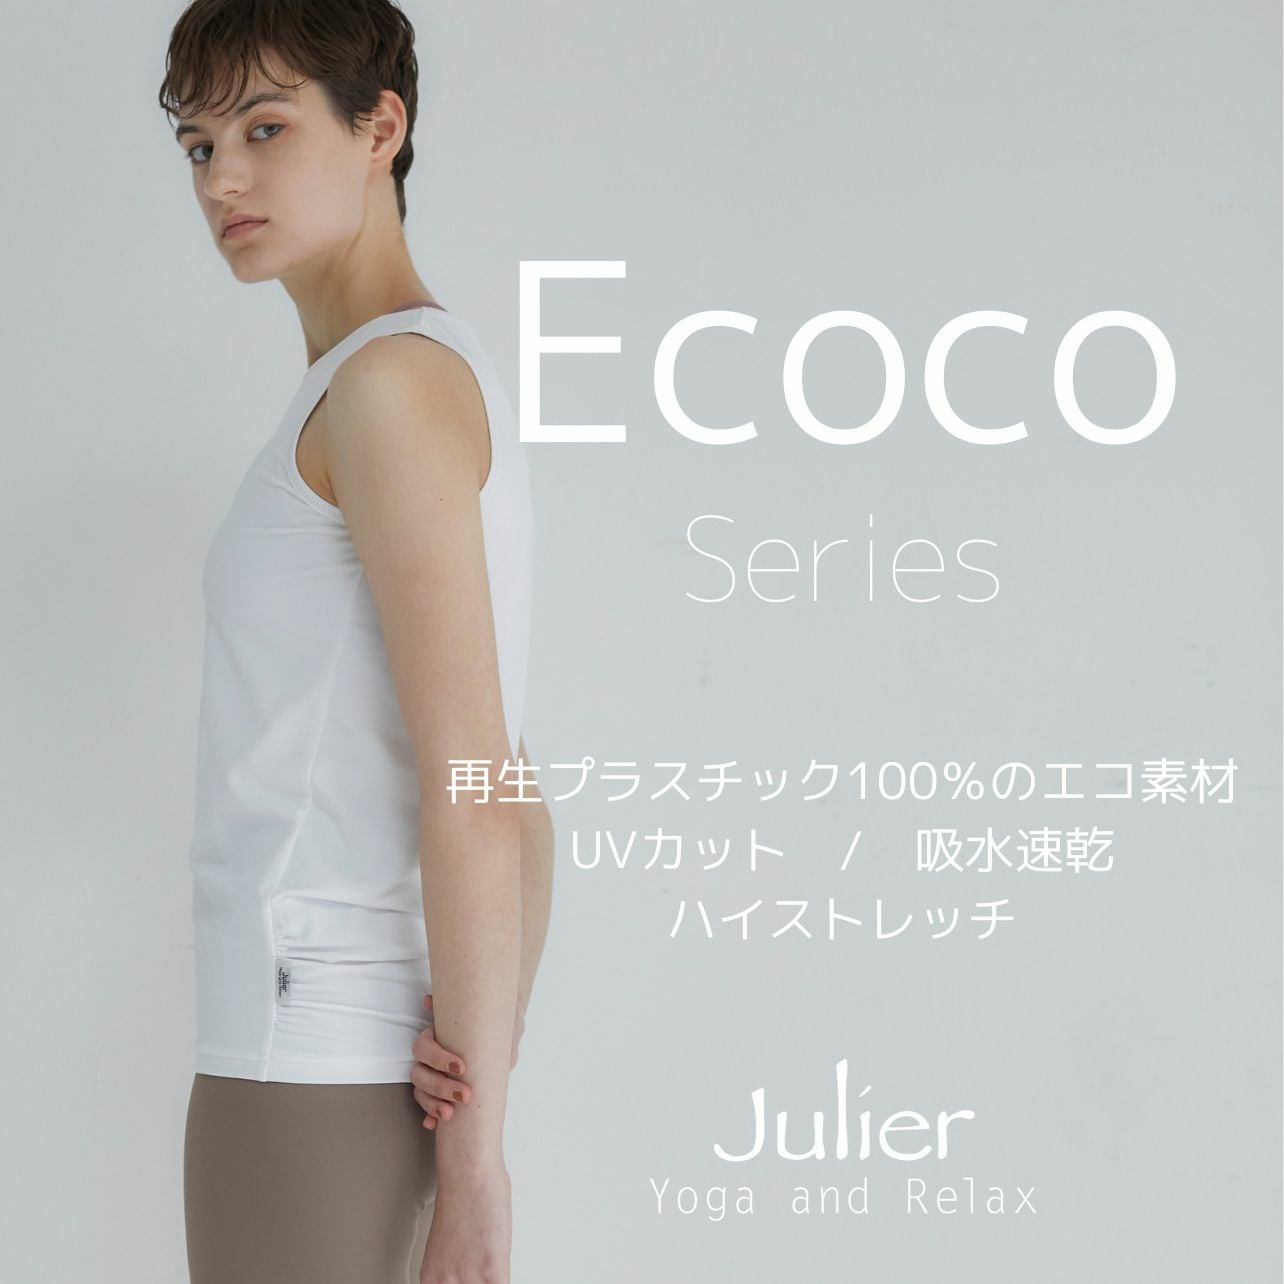 Ecocoシリーズ